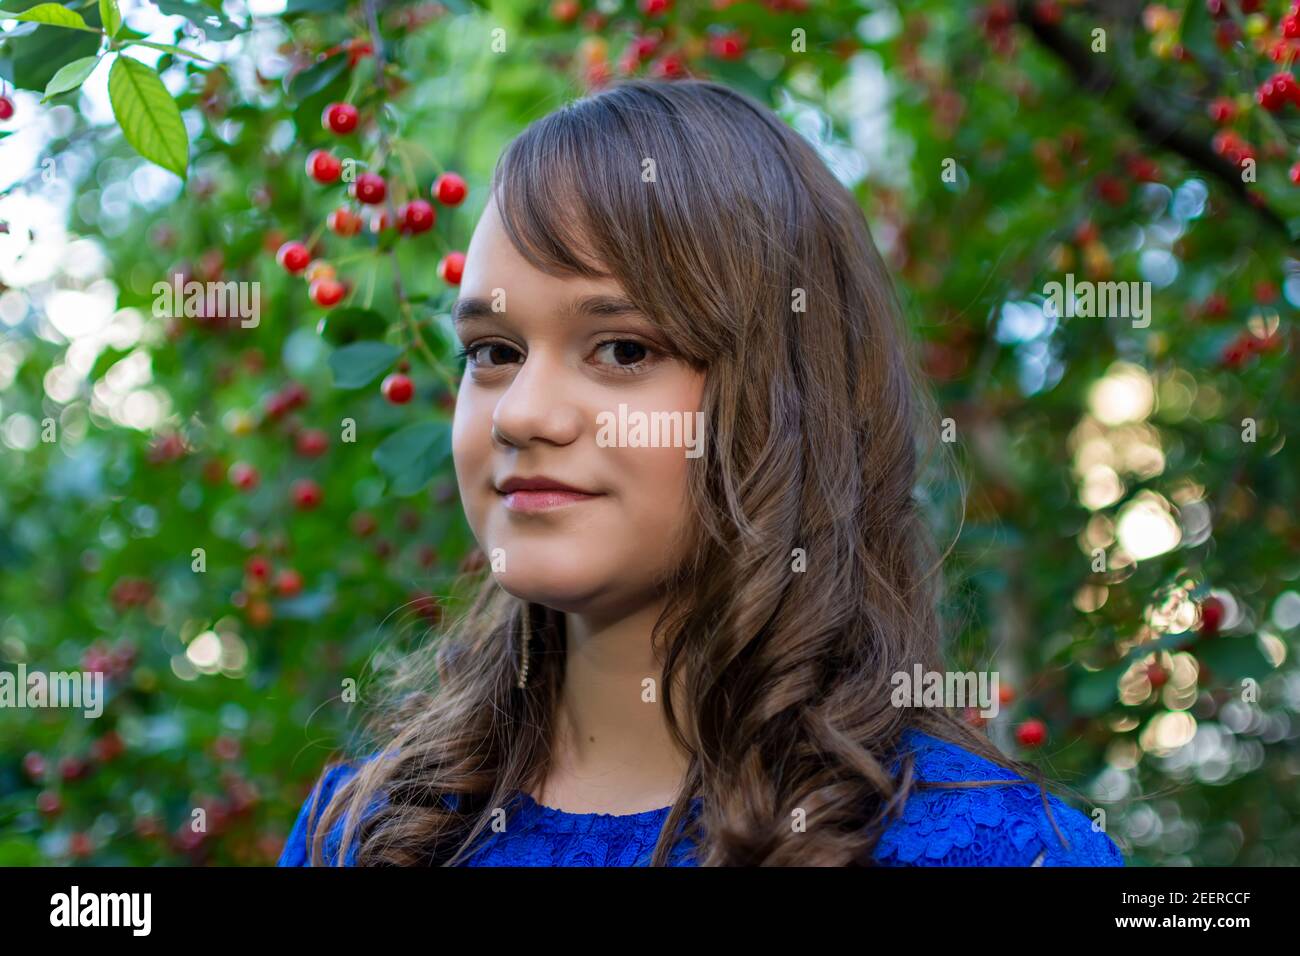 Jolie fille souriant en prenant des photos dans un jardin de cerises. Portrait de jeune fille avec maquillage. Fruits mûrs à l'arrière-plan. Représentant l'été Banque D'Images